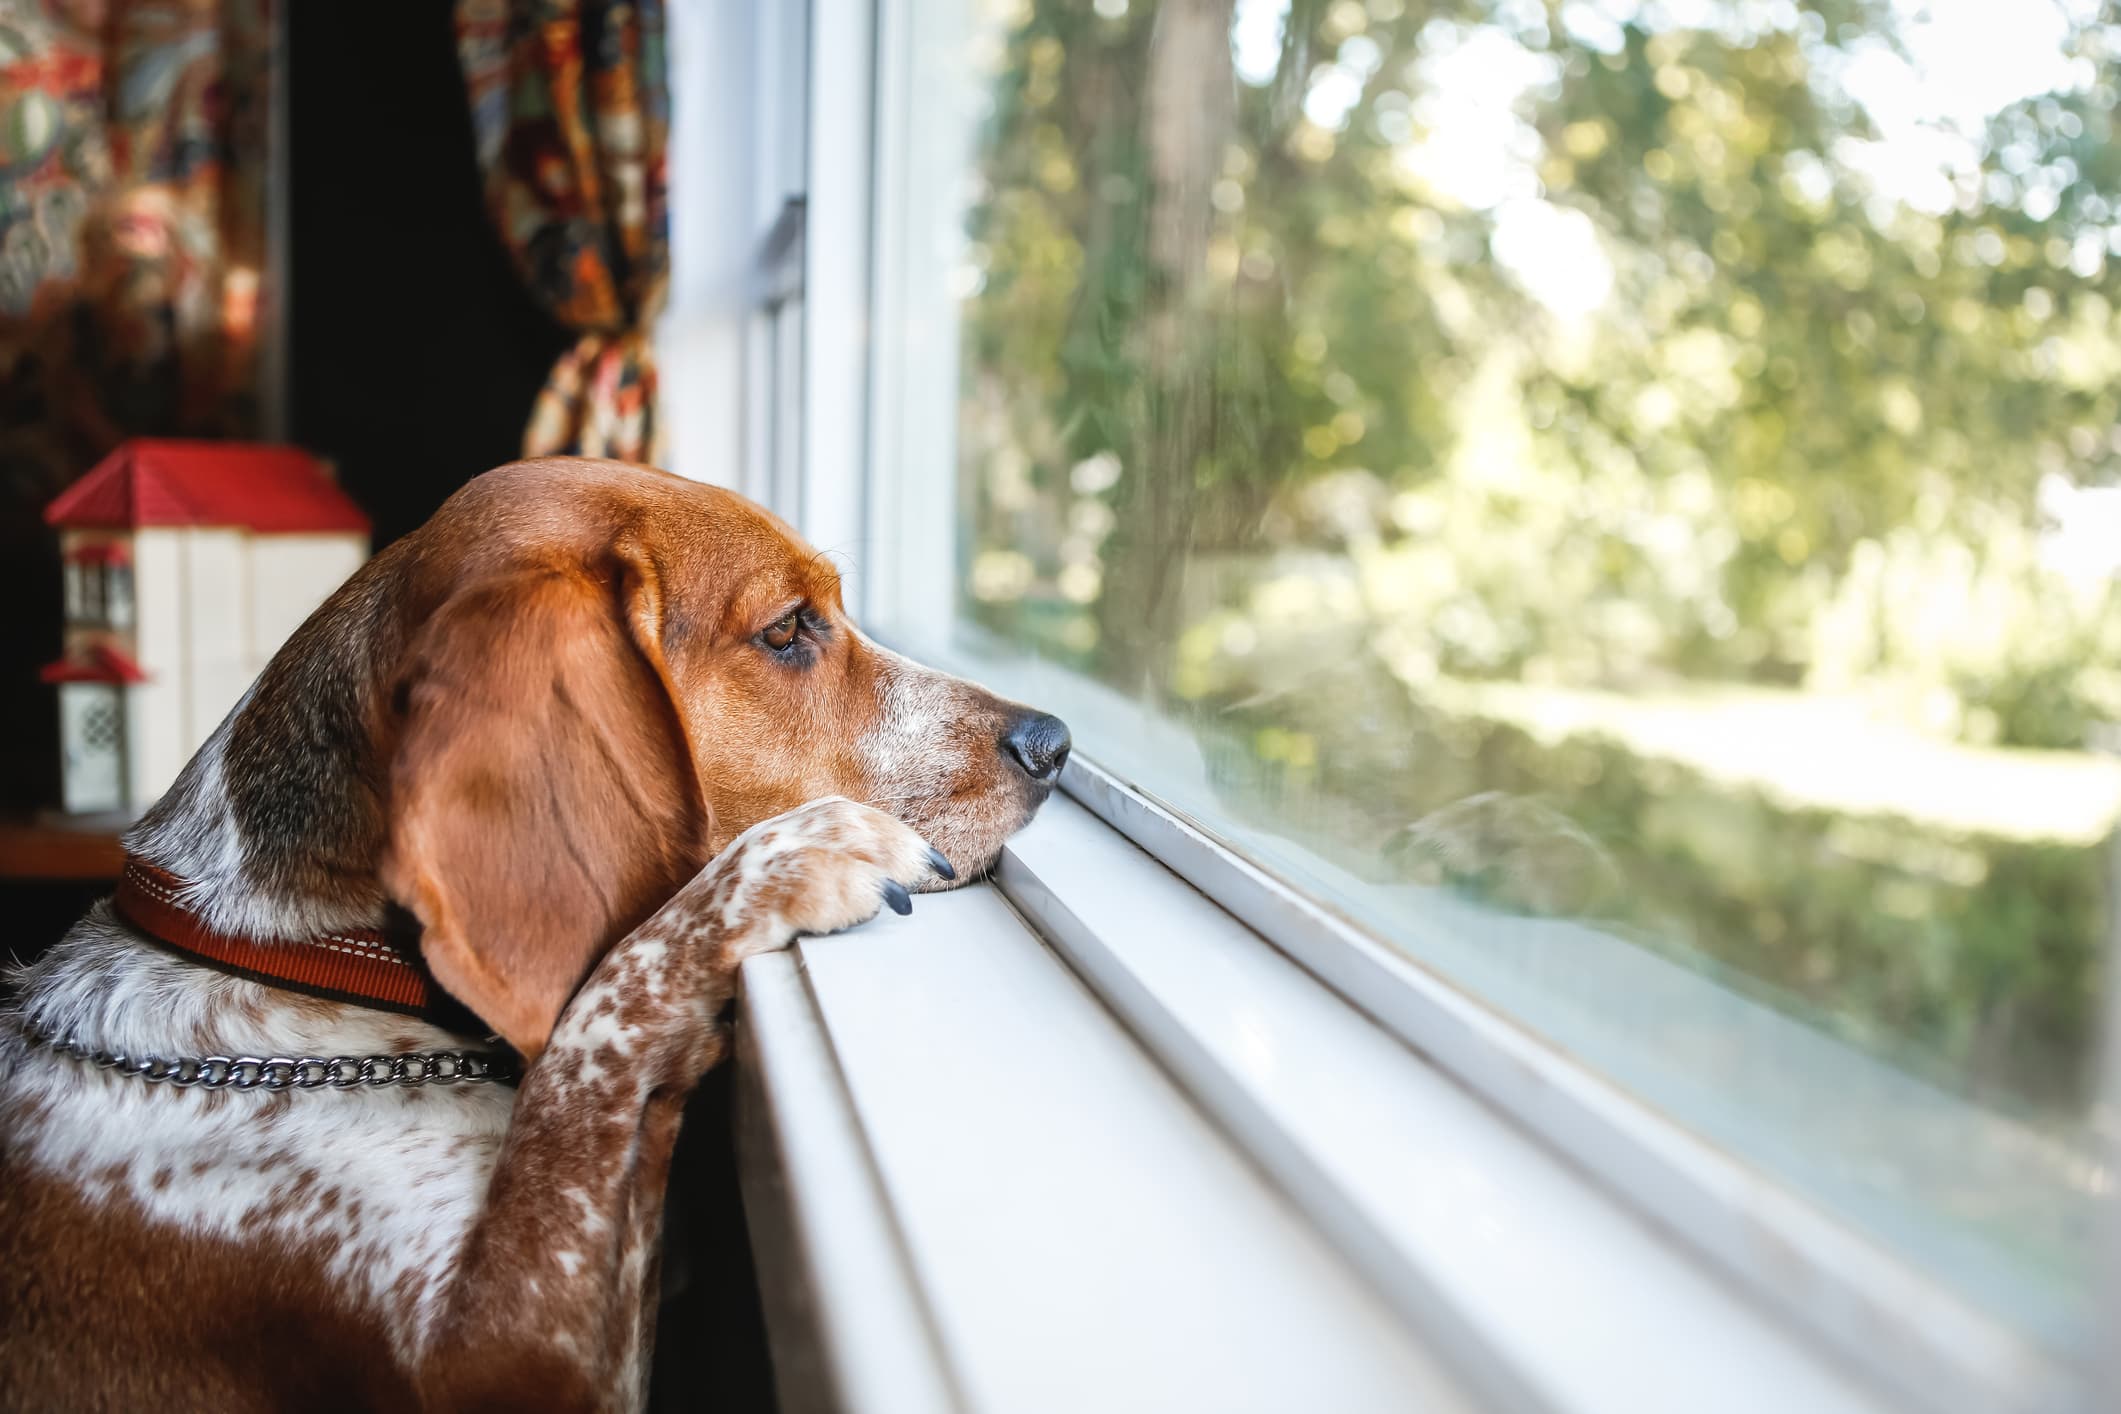 Um cachorro de pelo caramelo e manchas brancas olhando pela janela e fundo desfocado.